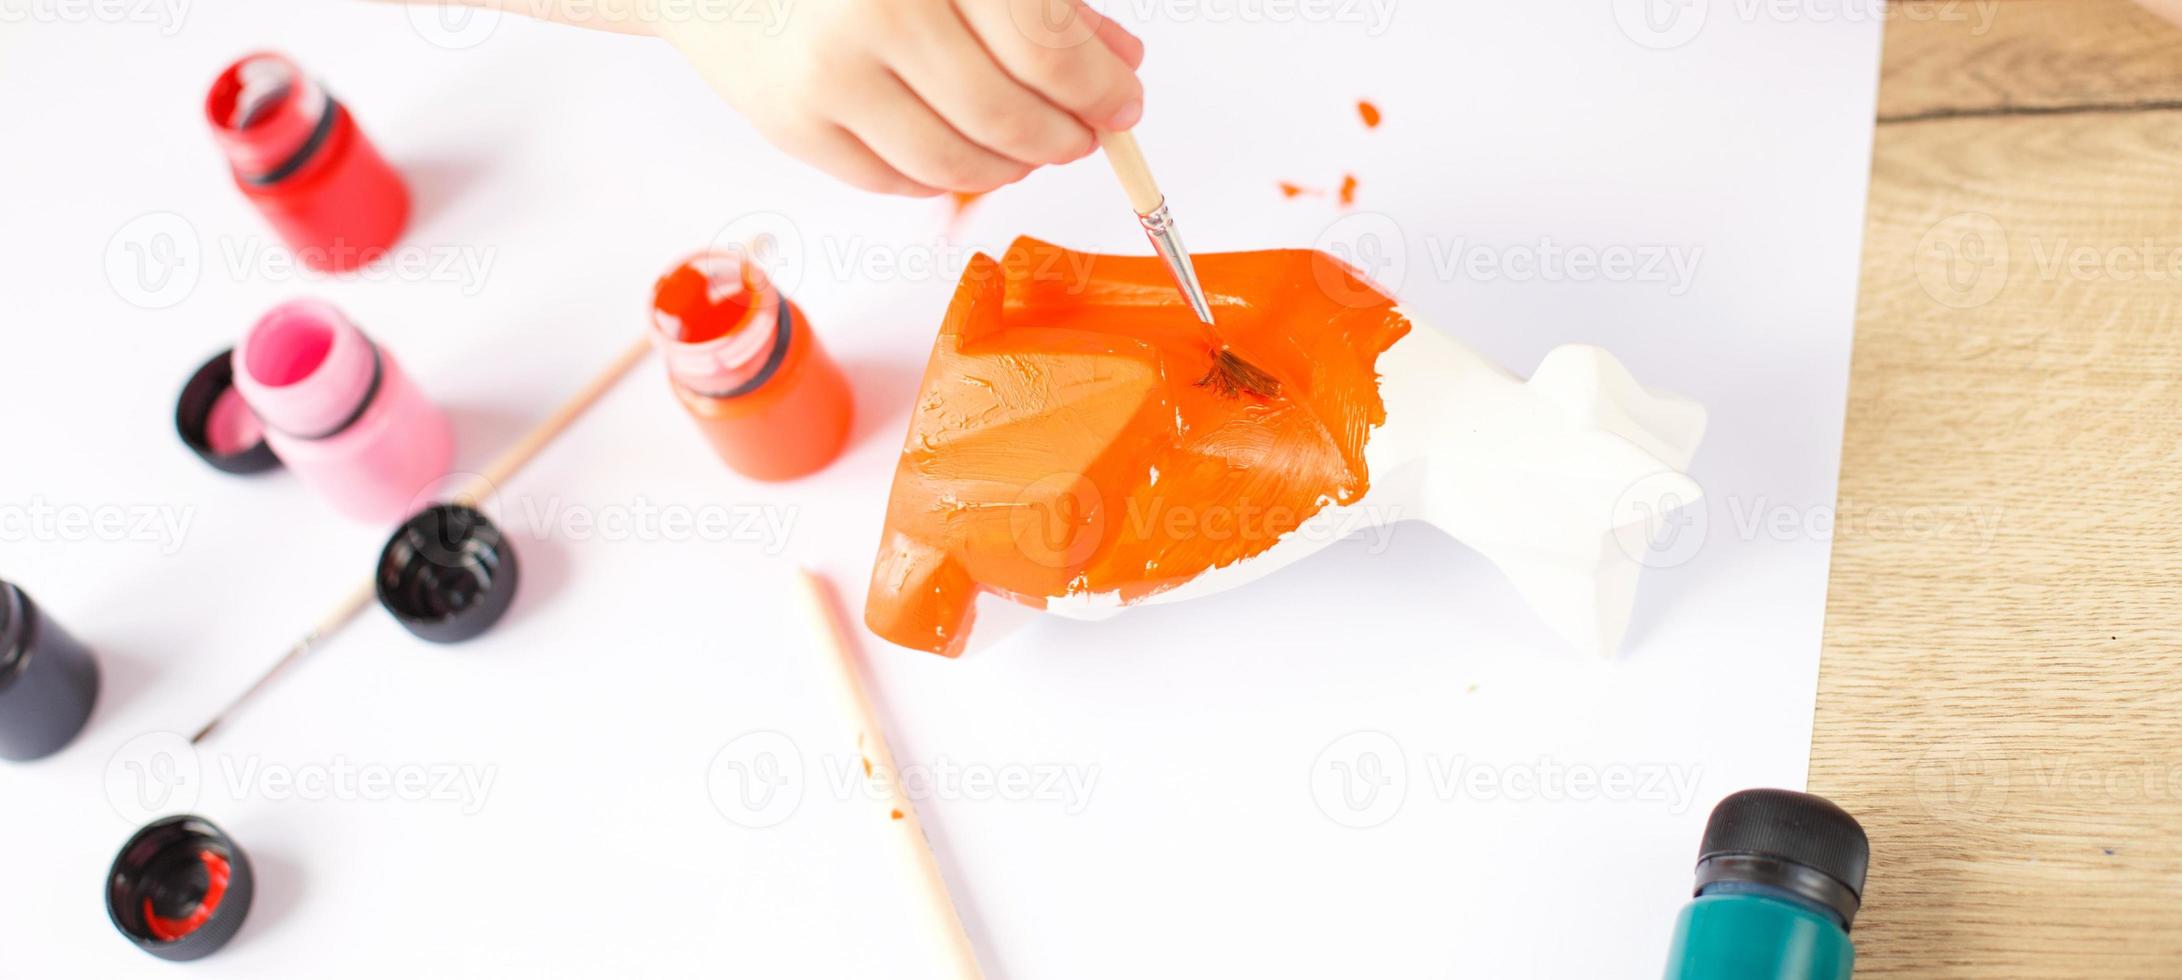 en liten flicka målarfärger en leksak räv tillverkad av lera. diy begrepp foto